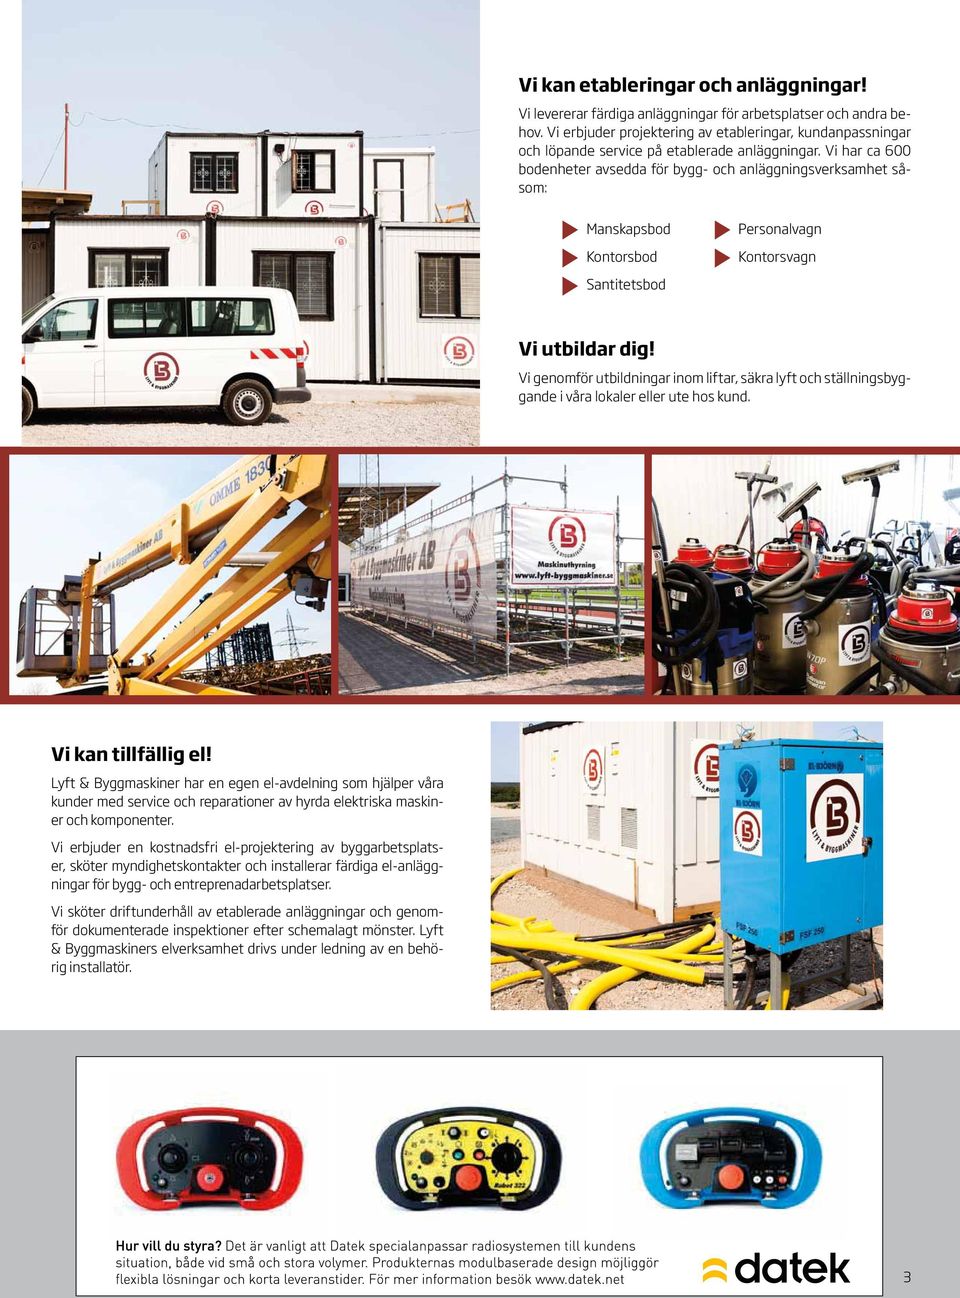 Vi har ca 600 bodenheter avsedda för bygg- och anläggningsverksamhet såsom: Manskapsbod Kontorsbod Personalvagn Kontorsvagn Santitetsbod Vi utbildar dig!